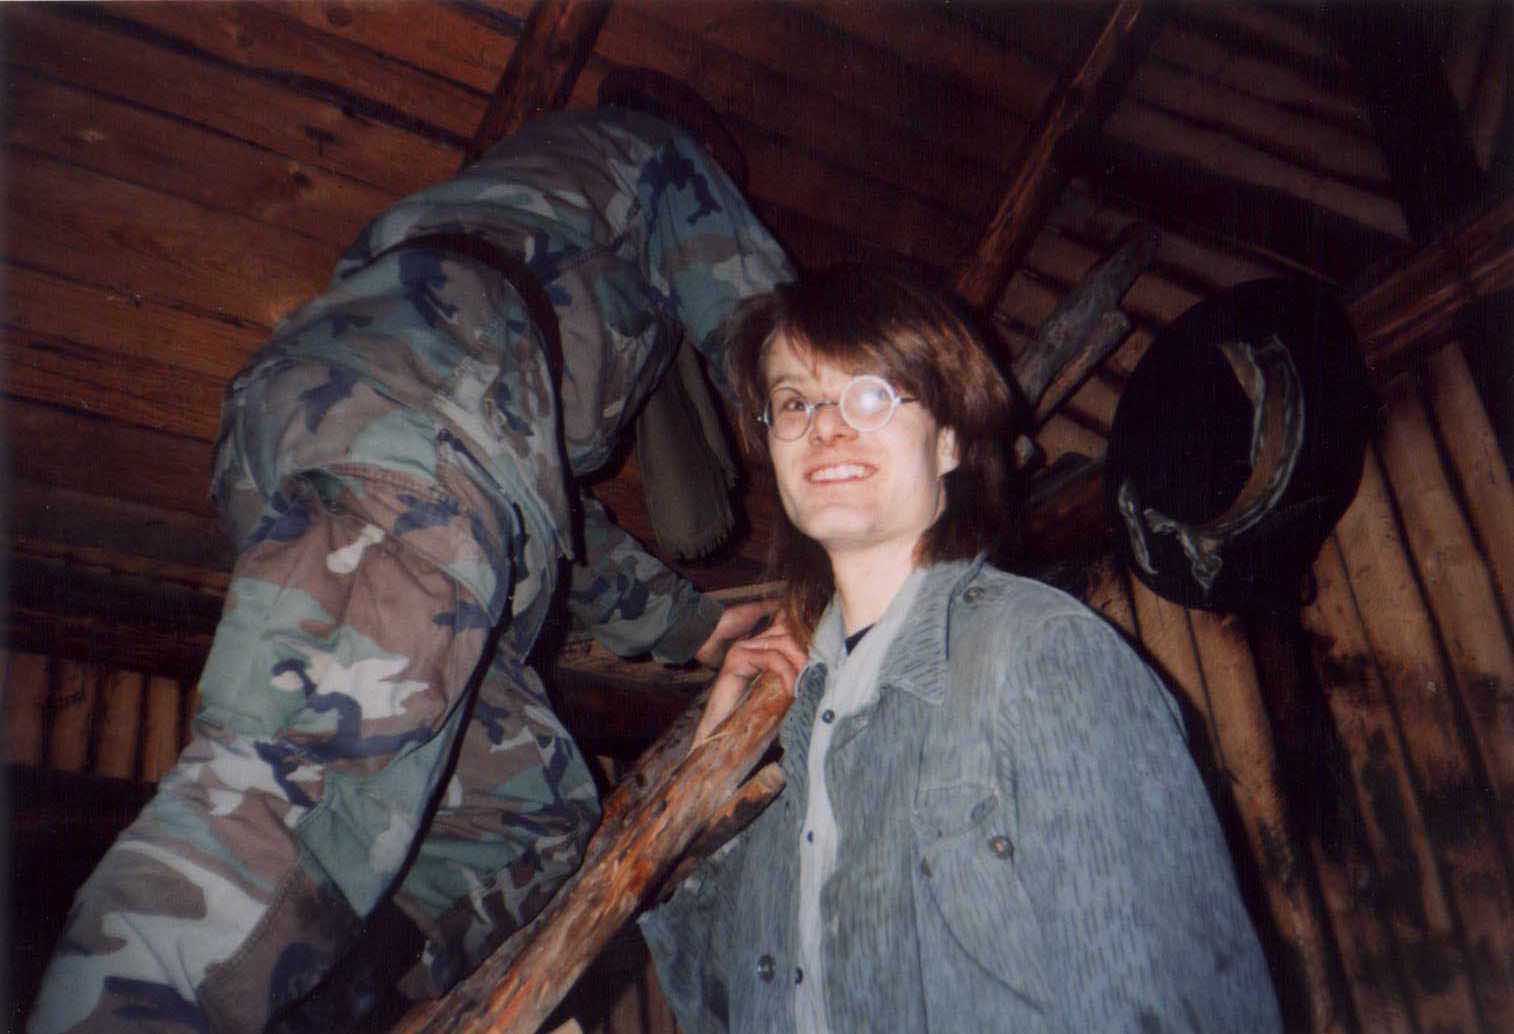 Unkas na seníku Kalamajka, foto pořízeno v roce 1995